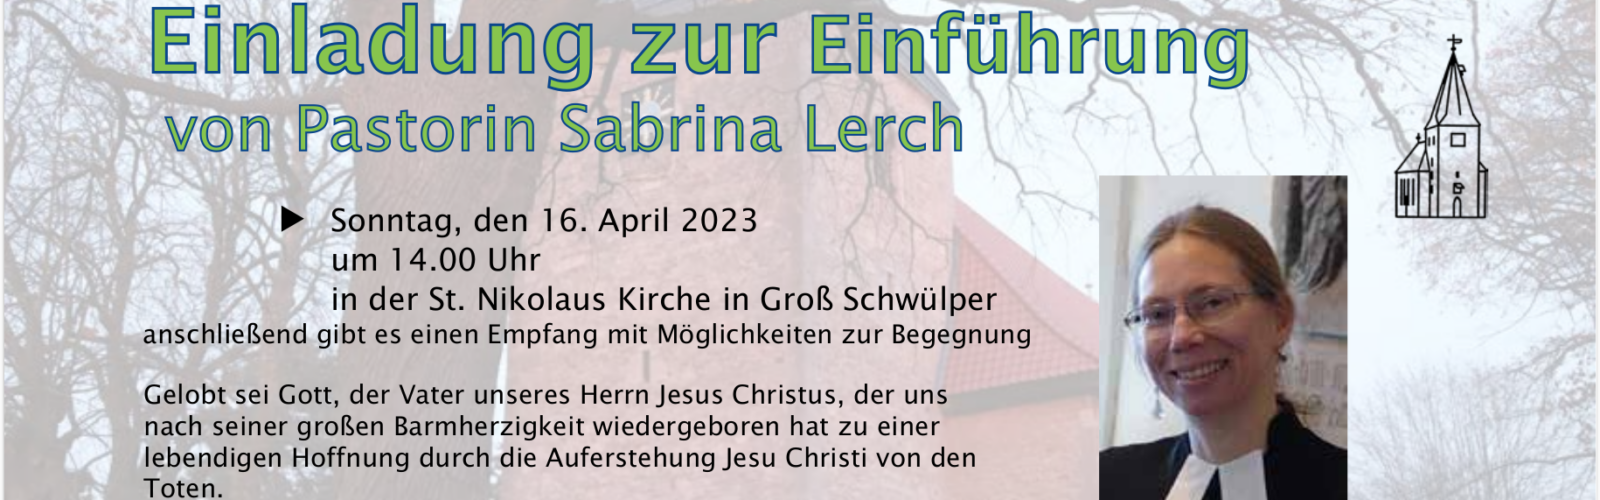 Einladung zur Einführung von Pastorin Sabrina Lerch